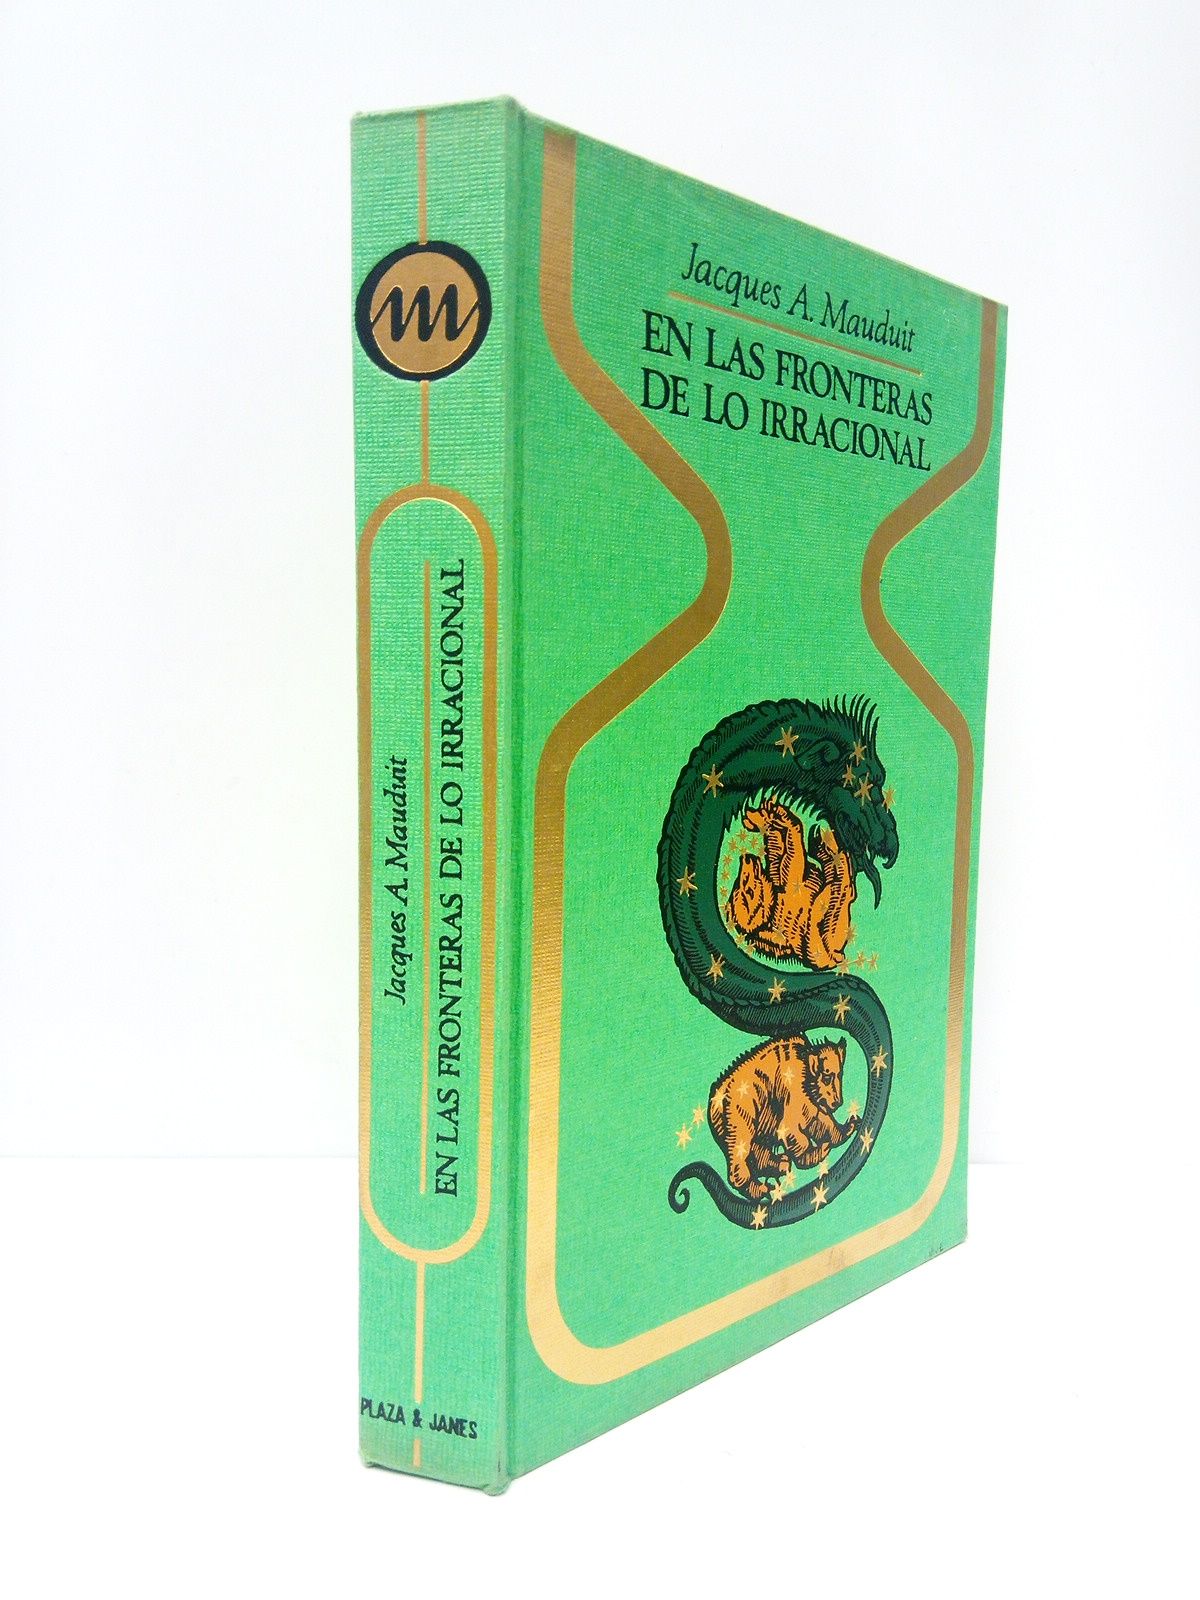 MAUDUIT, Jacques A. - En las fronteras de lo irracional /  Traduc. de J. Ferrer Aleu